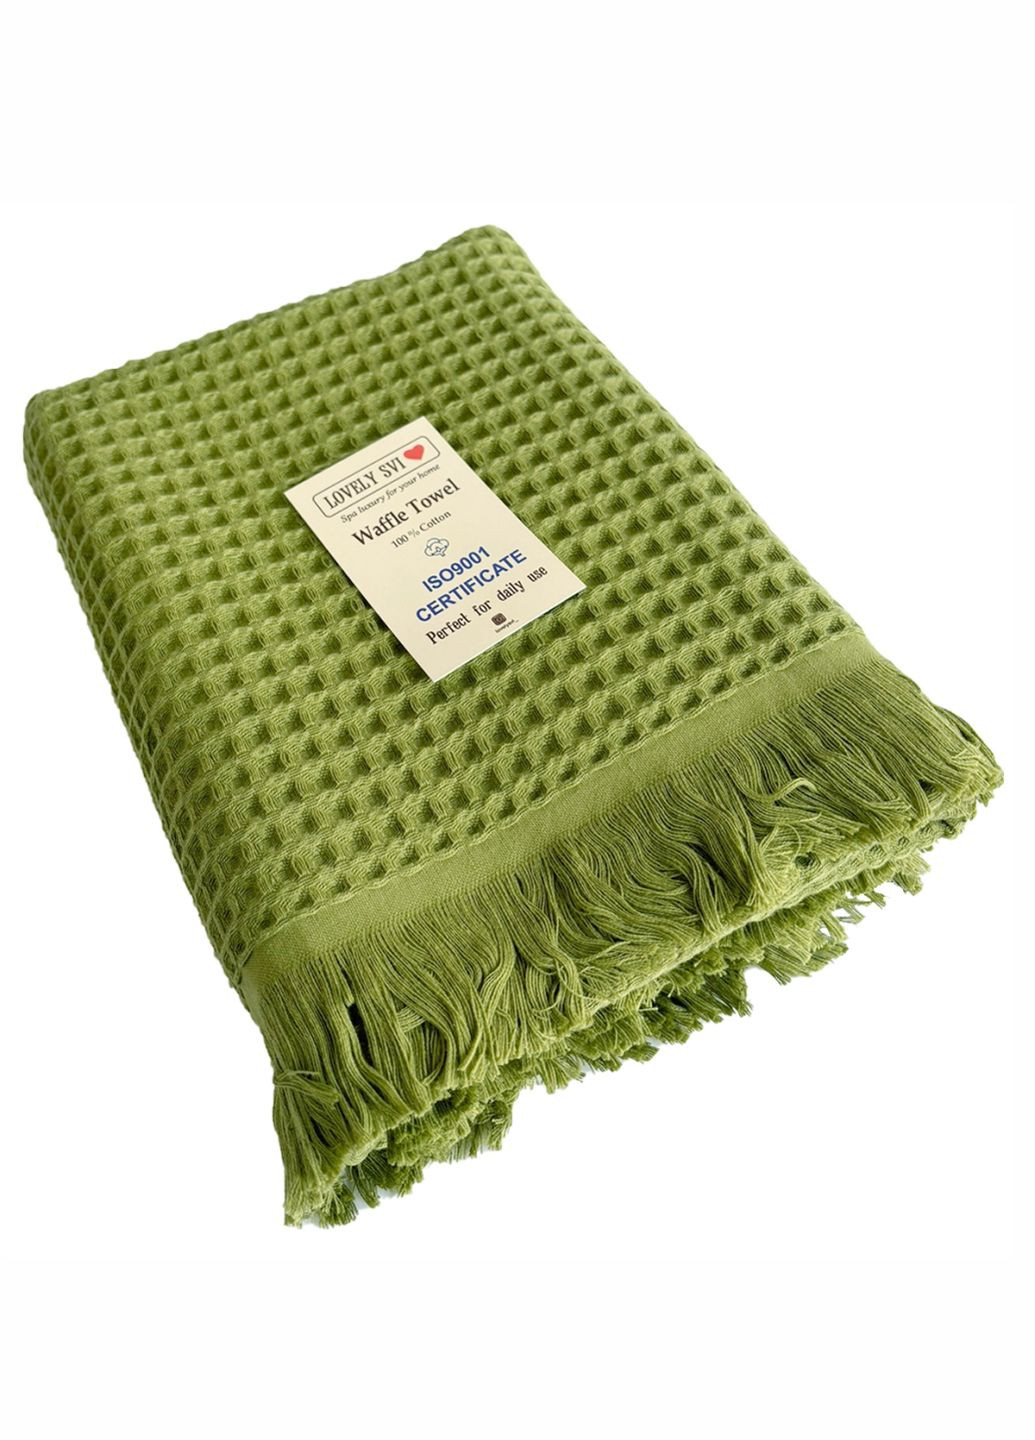 Lovely Svi вафельное полотенце - хлопок - для ванной, отелей, спа - xxl 90х180 см -зеленый однотонный зеленый производство - Китай